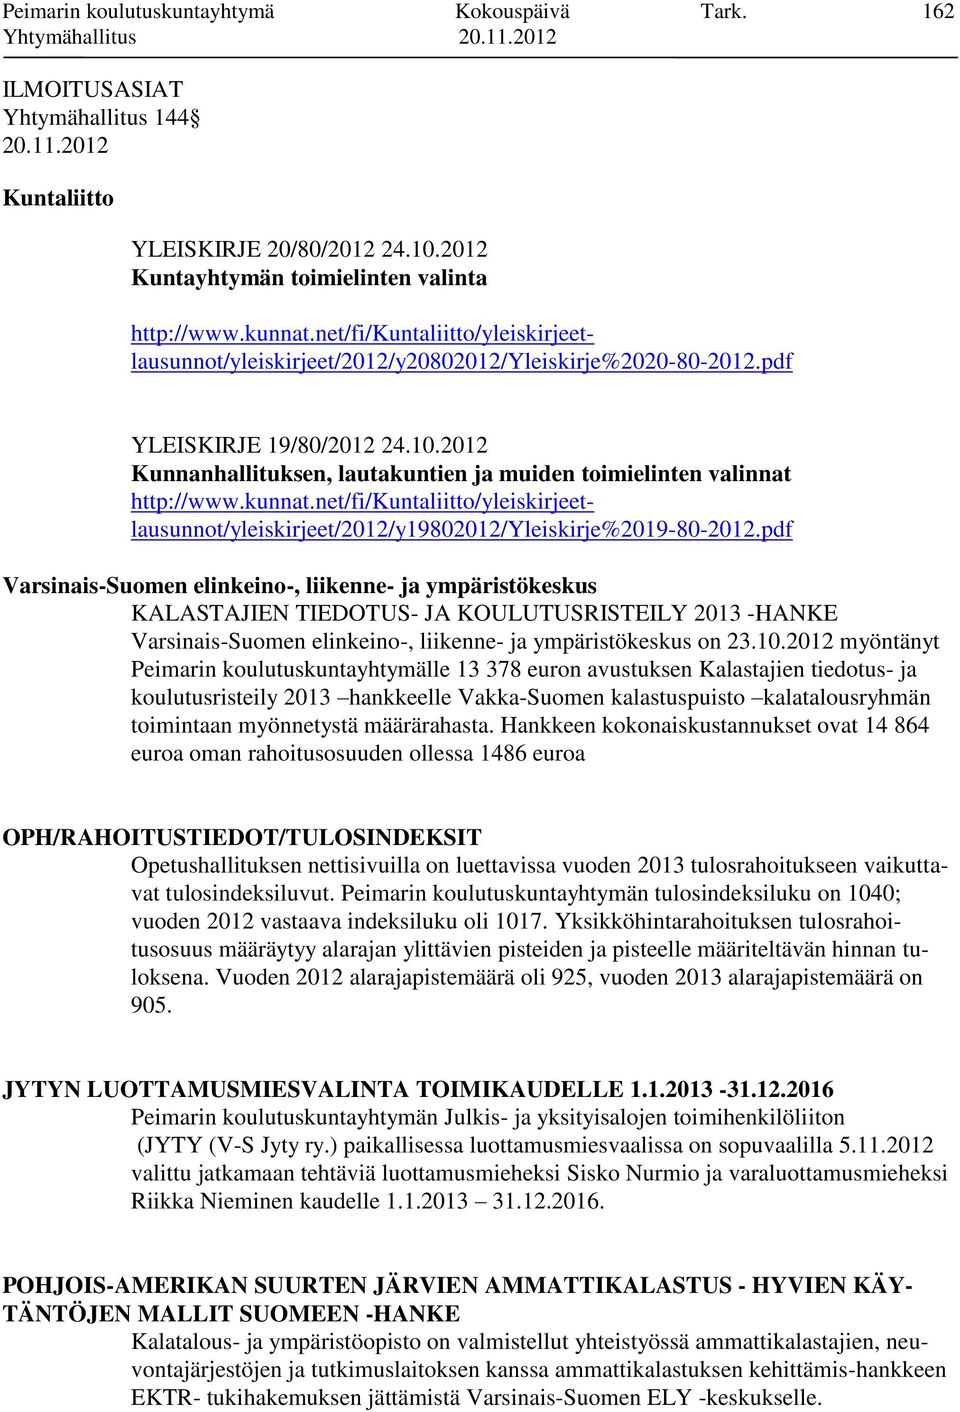 2012 Kunnanhallituksen, lautakuntien ja muiden toimielinten valinnat http://www.kunnat.net/fi/kuntaliitto/yleiskirjeetlausunnot/yleiskirjeet/2012/y19802012/yleiskirje%2019-80-2012.